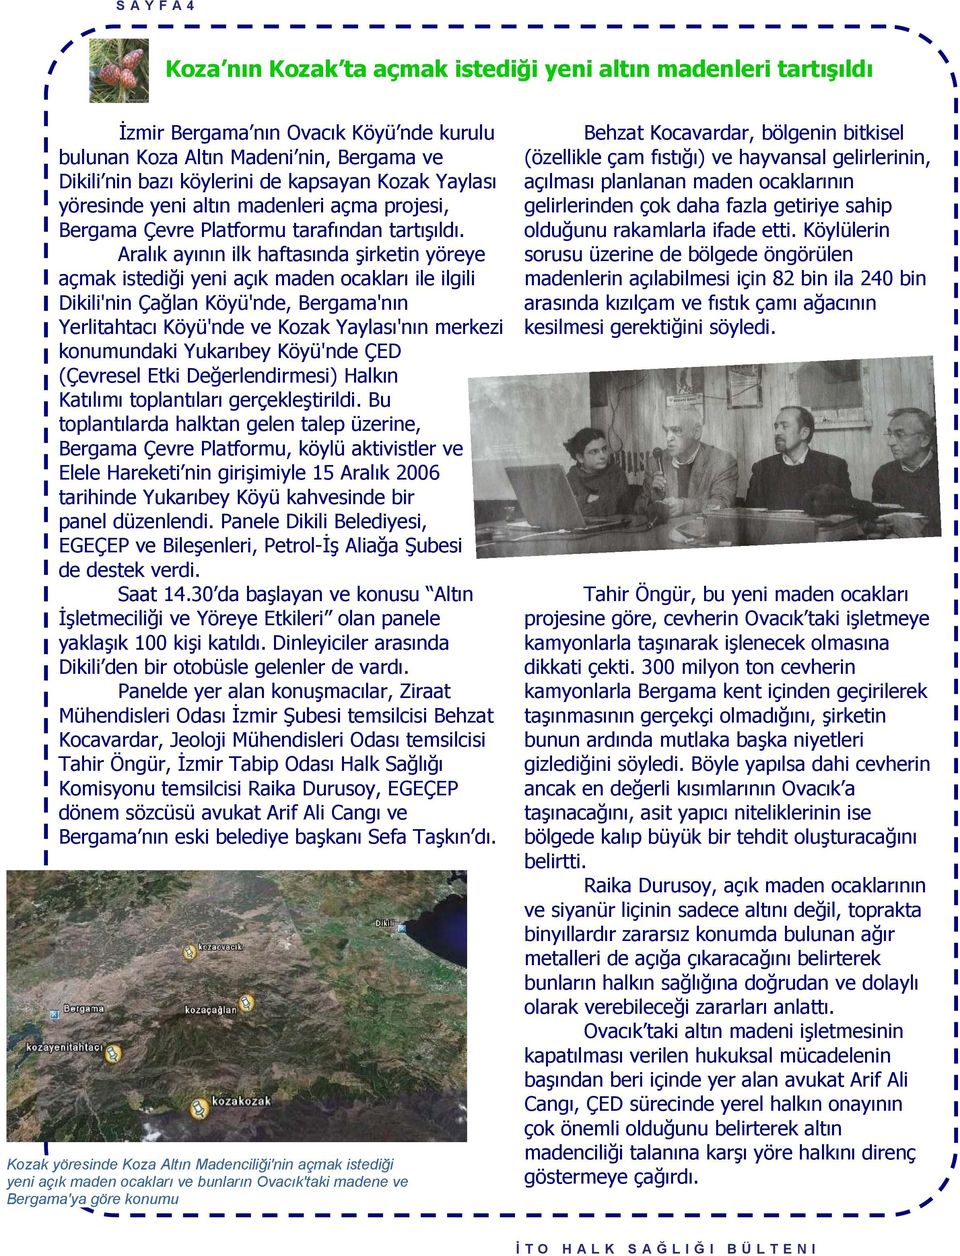 Aralık ayının ilk haftasında şirketin yöreye açmak istediği yeni açık maden ocakları ile ilgili Dikili'nin Çağlan Köyü'nde, Bergama'nın Yerlitahtacı Köyü'nde ve Kozak Yaylası'nın merkezi konumundaki